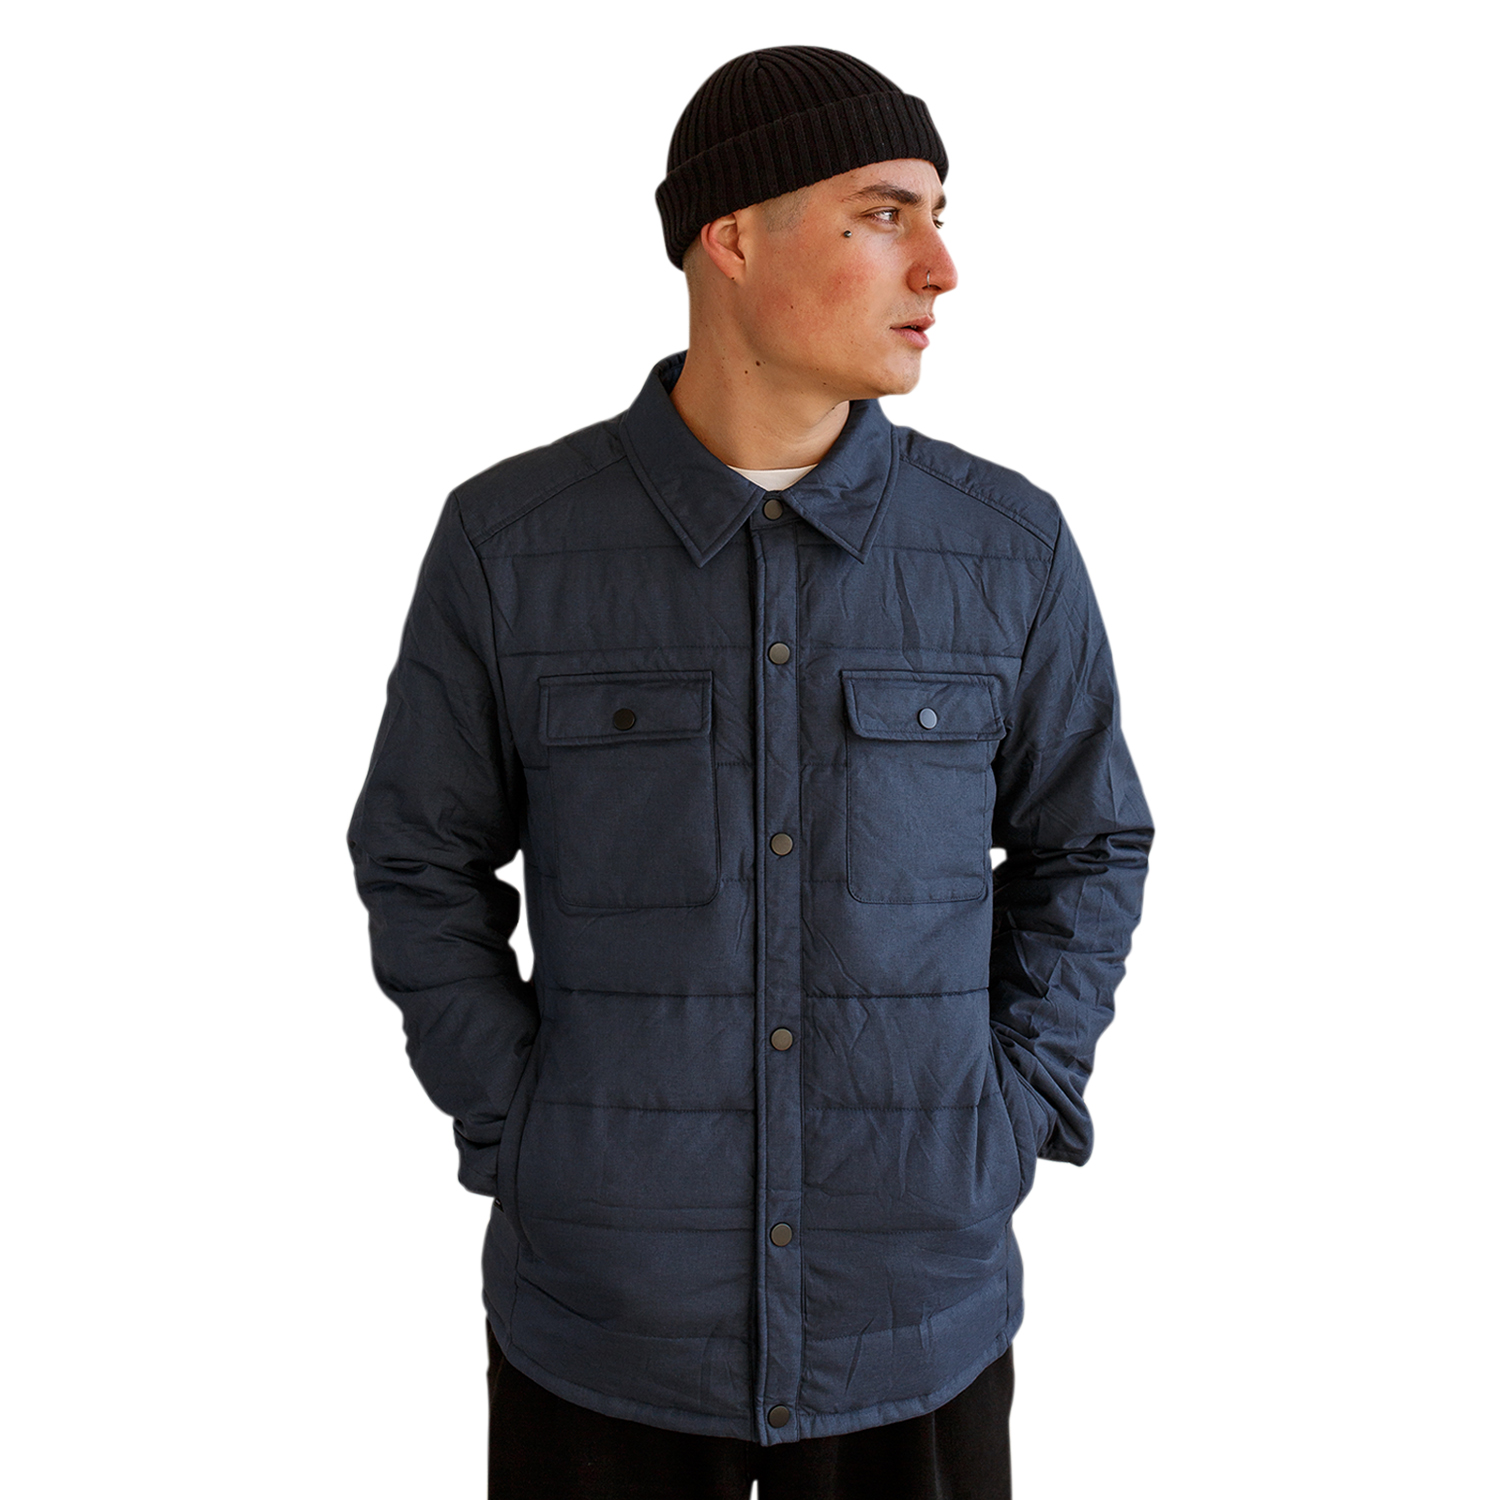 Куртка мужская MOAV MV-COAT-02-L синяя, MV-COAT-1, куртка, синий, полиэстер; нейлон  - купить